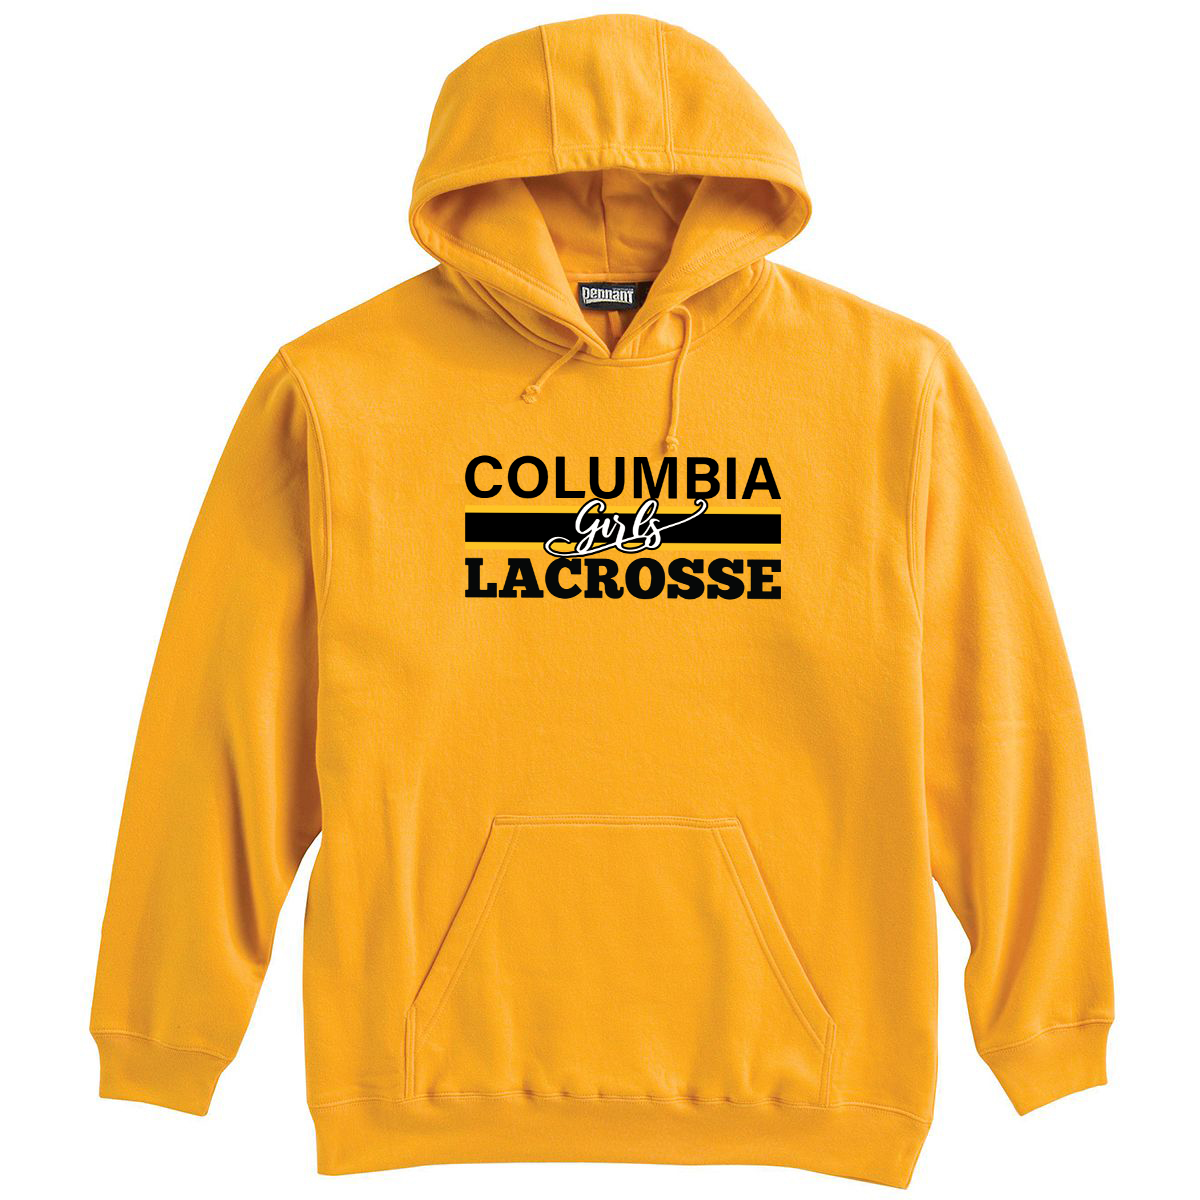 Columbia Girls Lacrosse Sweatshirt